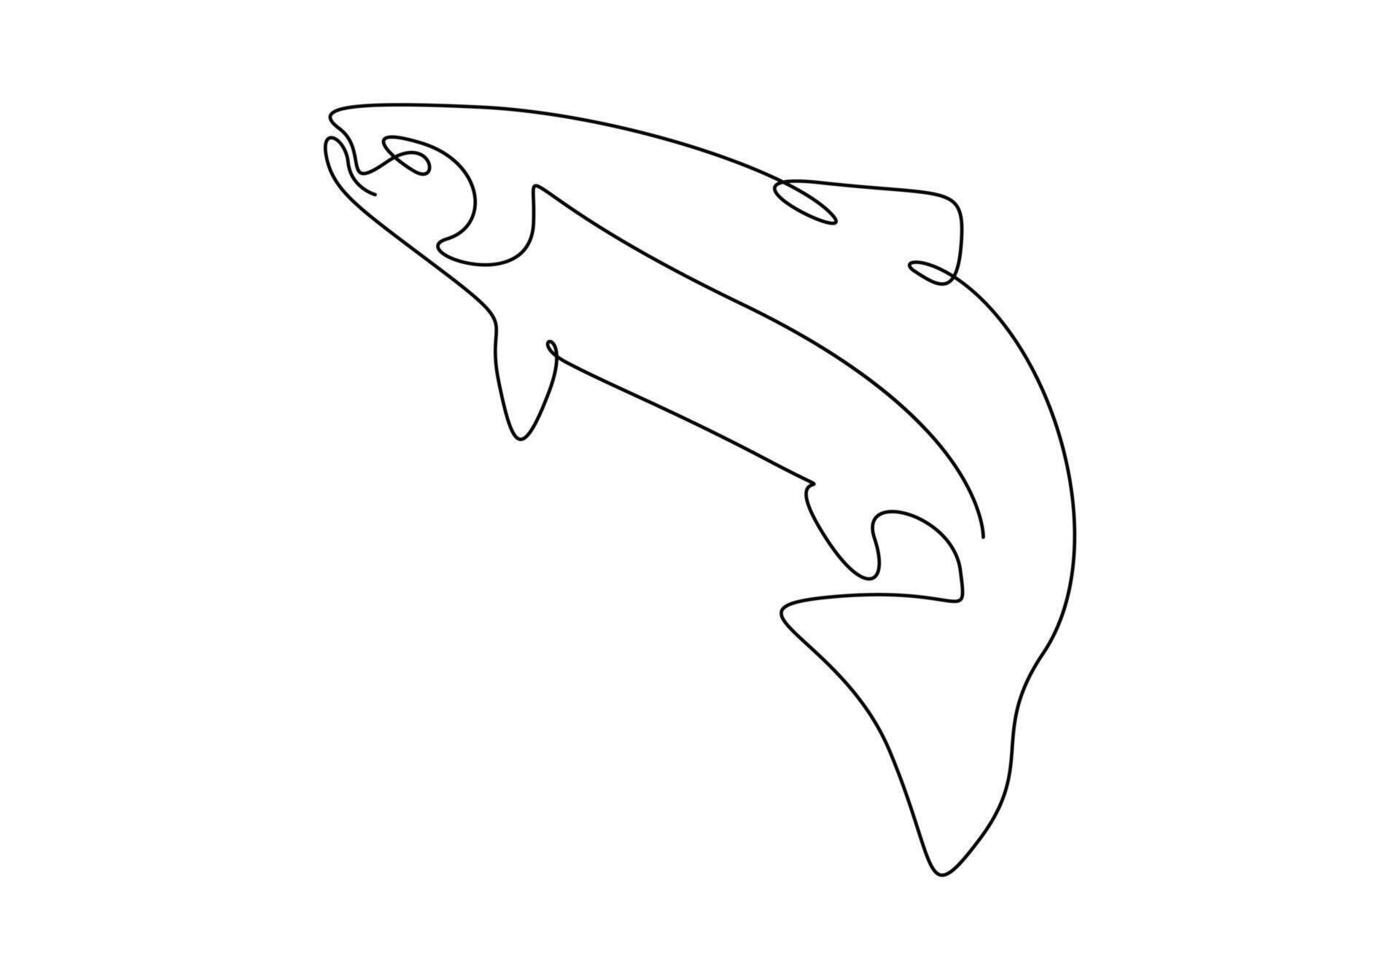 continuo uno línea dibujo de salmón para pescar logo identidad prima ilustración vector